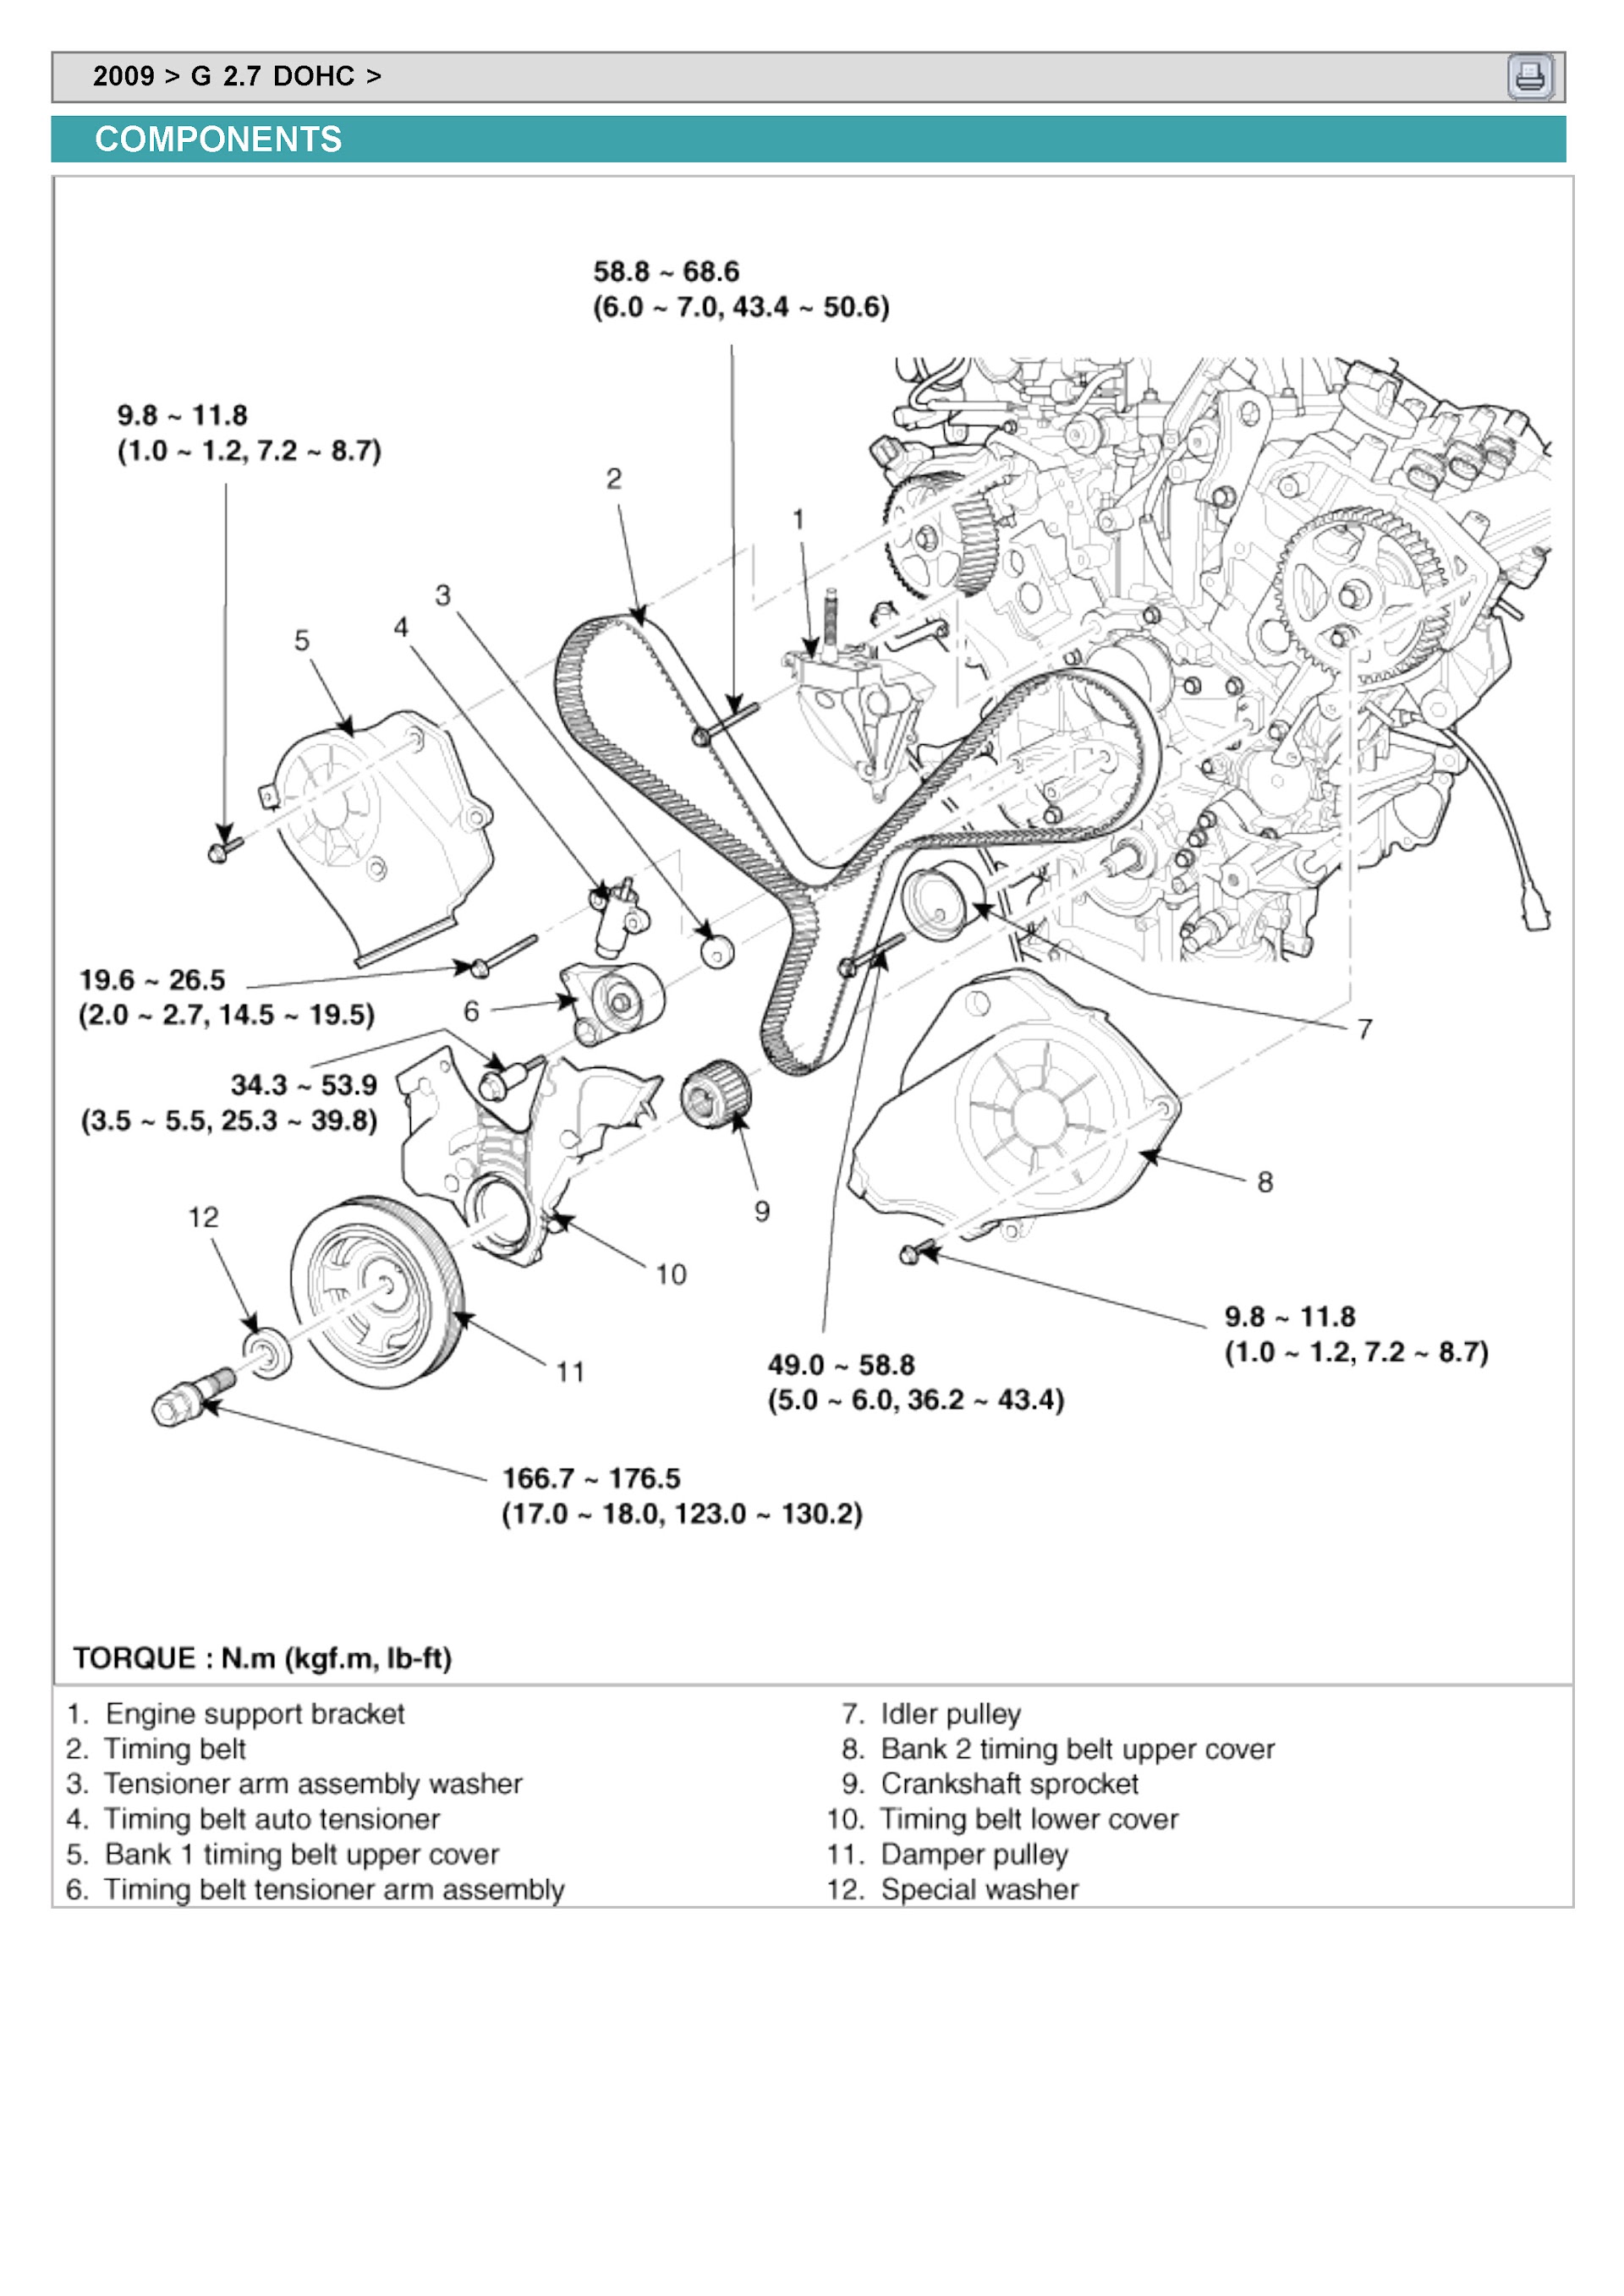 Download 2009 Kia Sedona Repair Manual